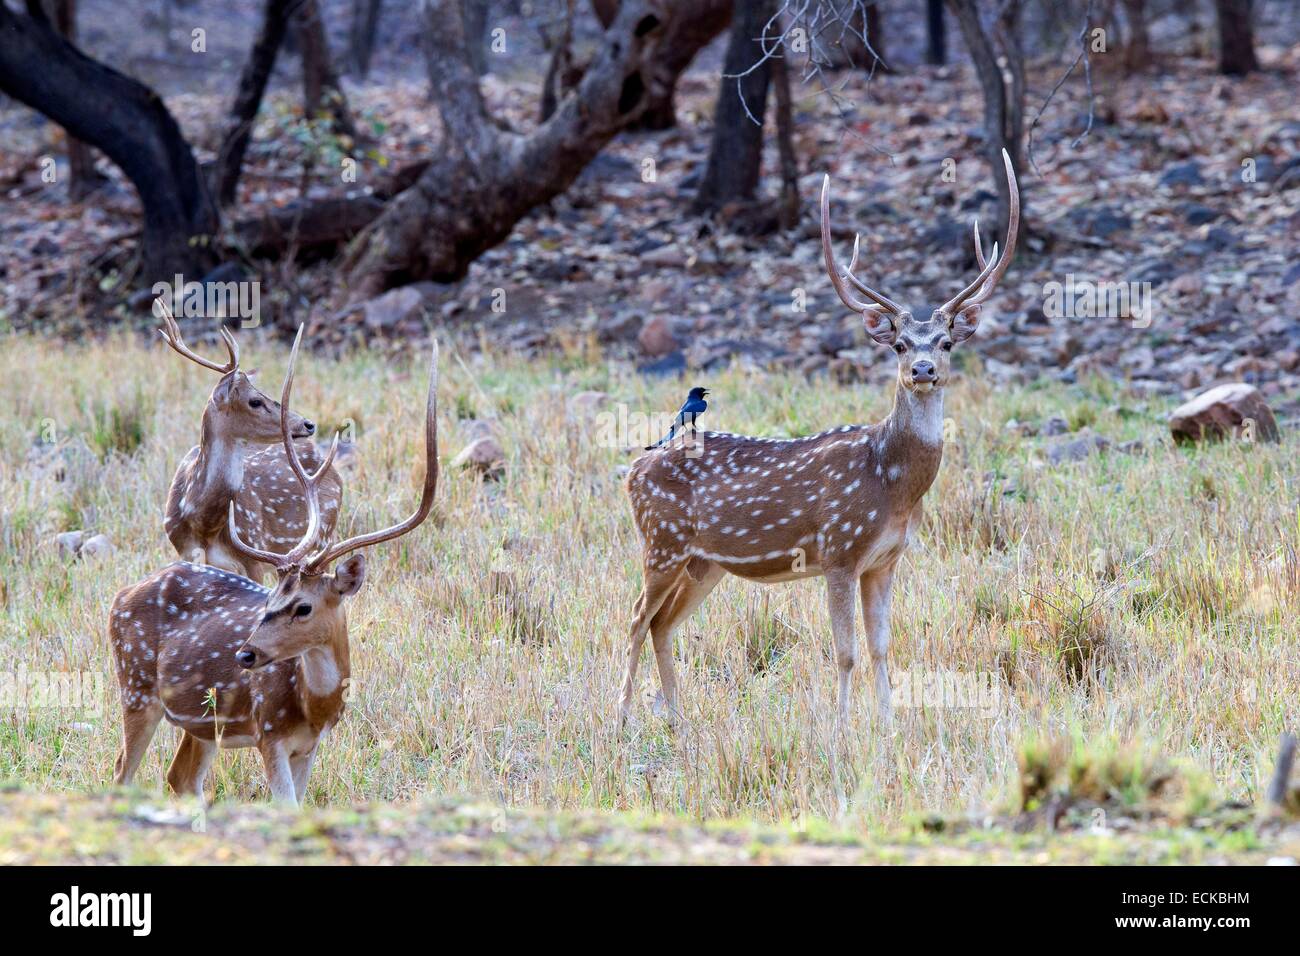 L'Inde, Rajasthan, le parc national de Ranthambore, Chital ou Cheetal ou Chital, cerf cerf tacheté ou Axis axis Axis()et Black Drongo (Dicrurus macrocercus) Banque D'Images